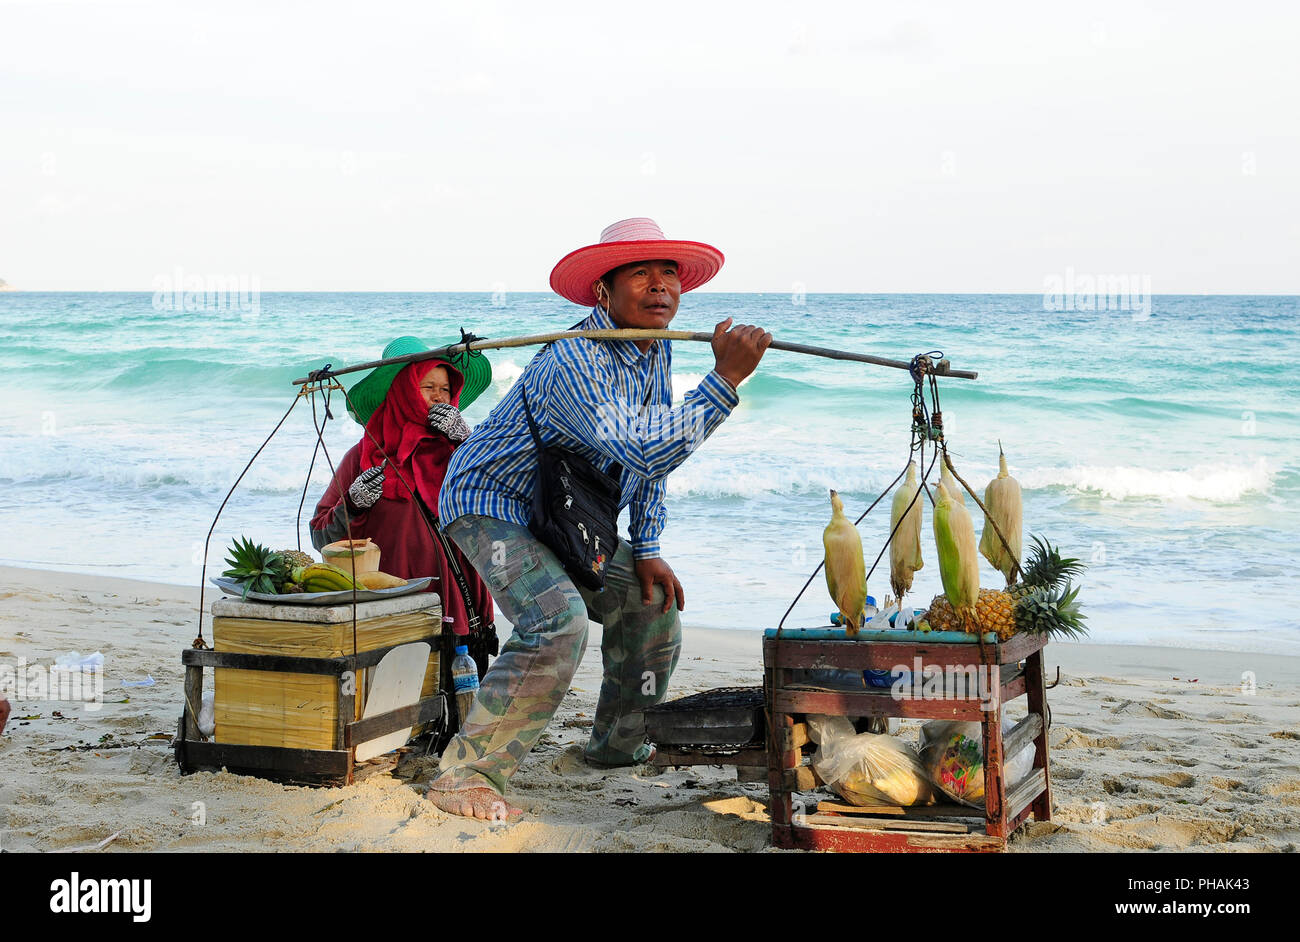 Vendeur ambulant sur les plages - Hawker on the beach - Koh Samui - Thailand Stock Photo